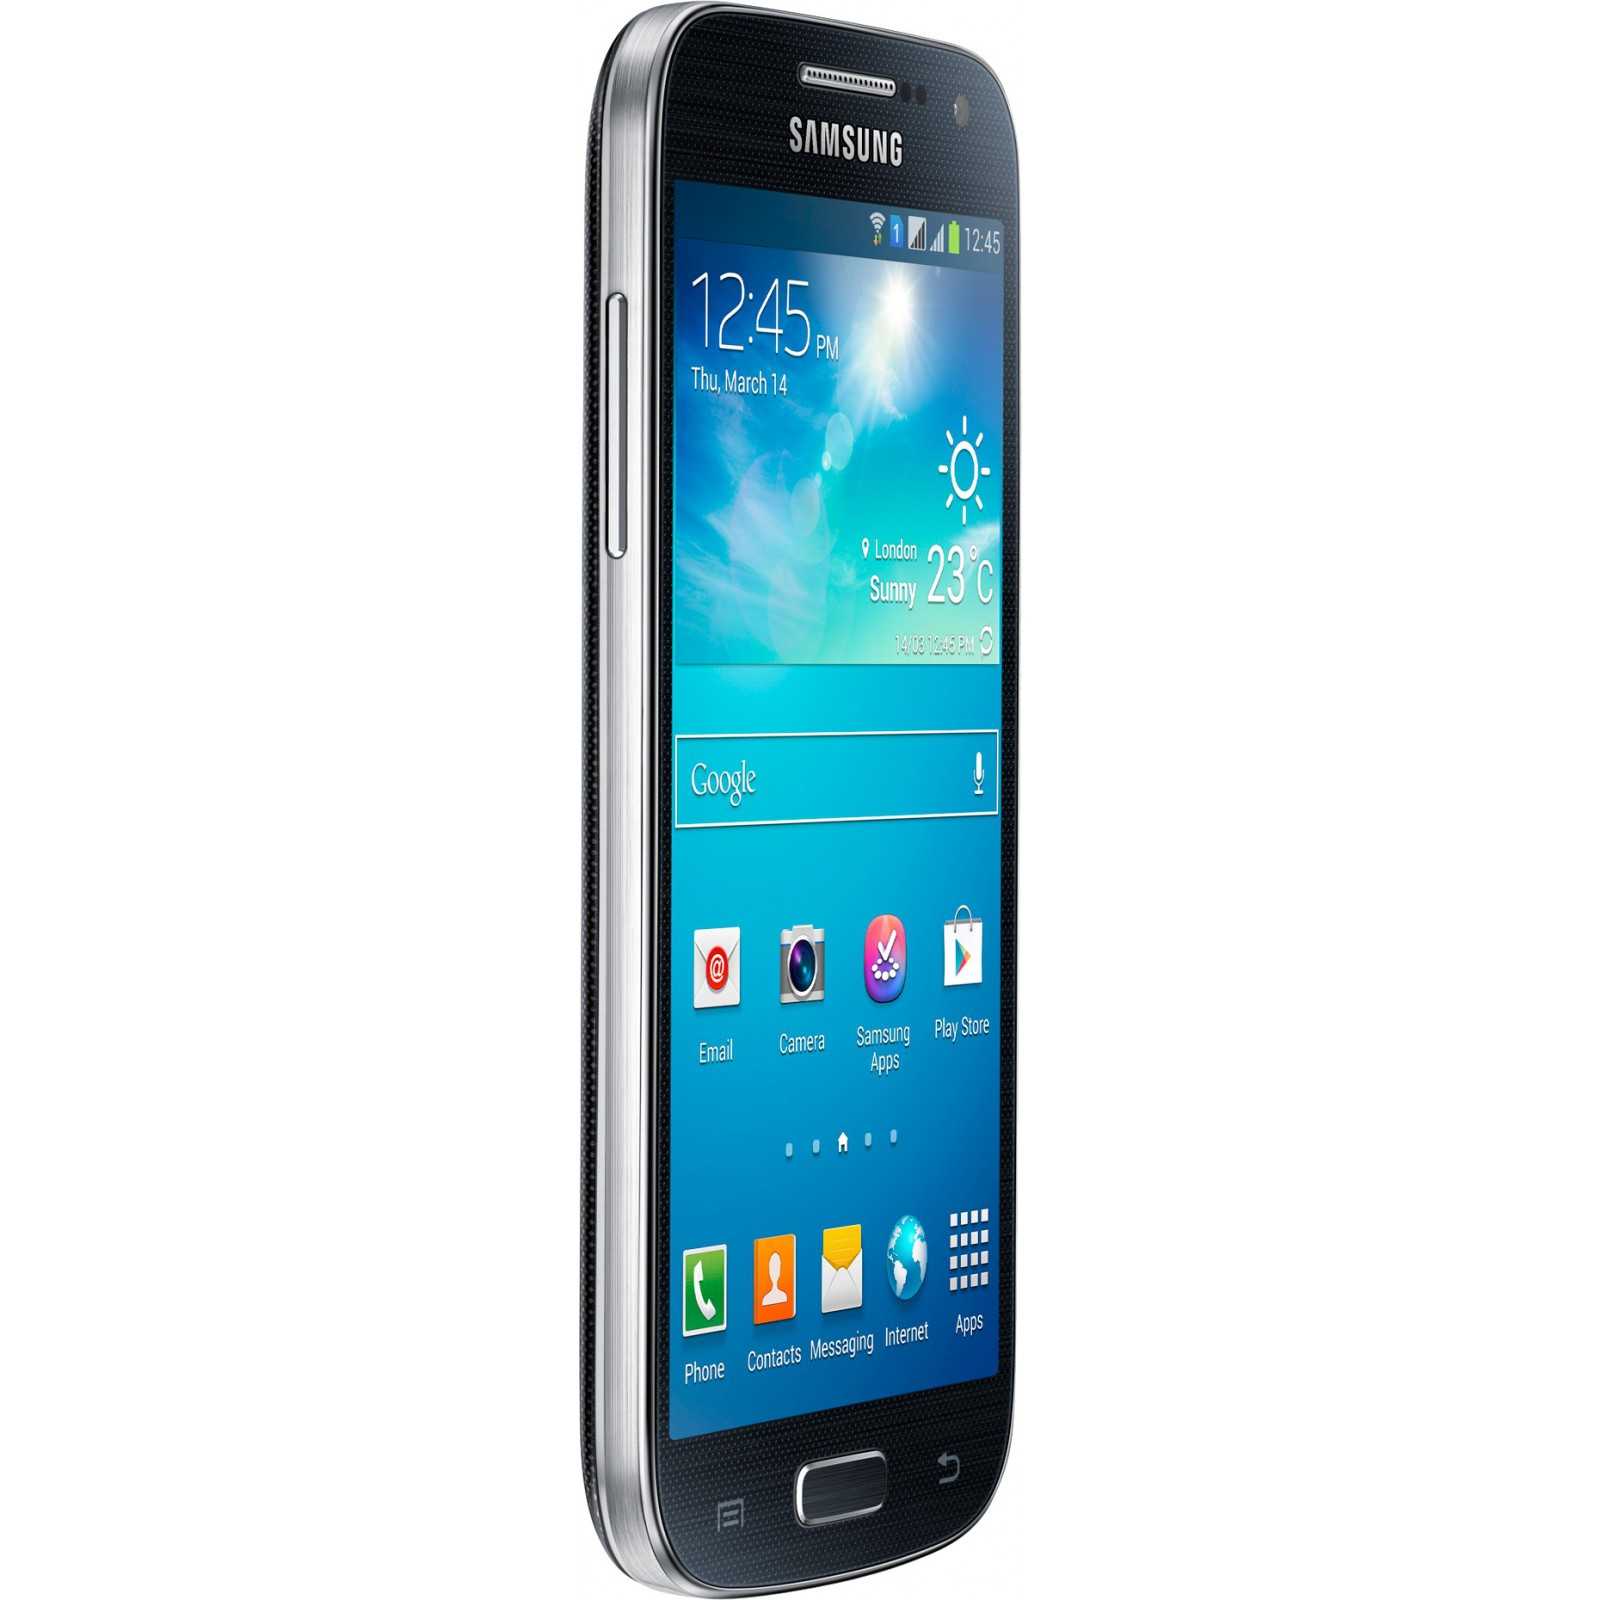 Samsung galaxy s4 mini gt-i9195